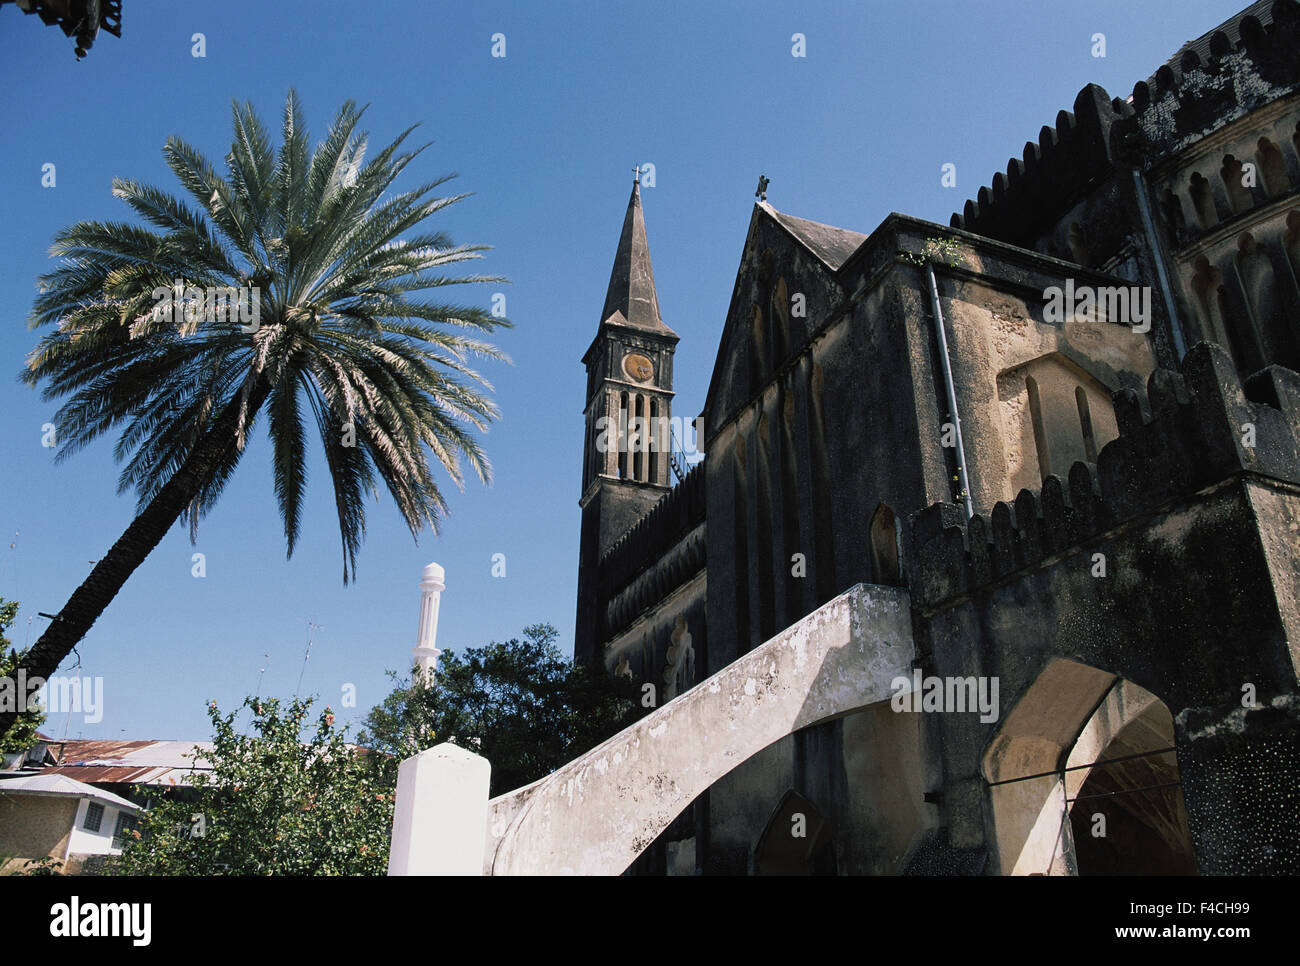 Tanzania, isola di Zanzibar, mercato di schiavi, chiesa costruita al di sopra della struttura di mantecazione. (Grandi dimensioni formato disponibile) Foto Stock